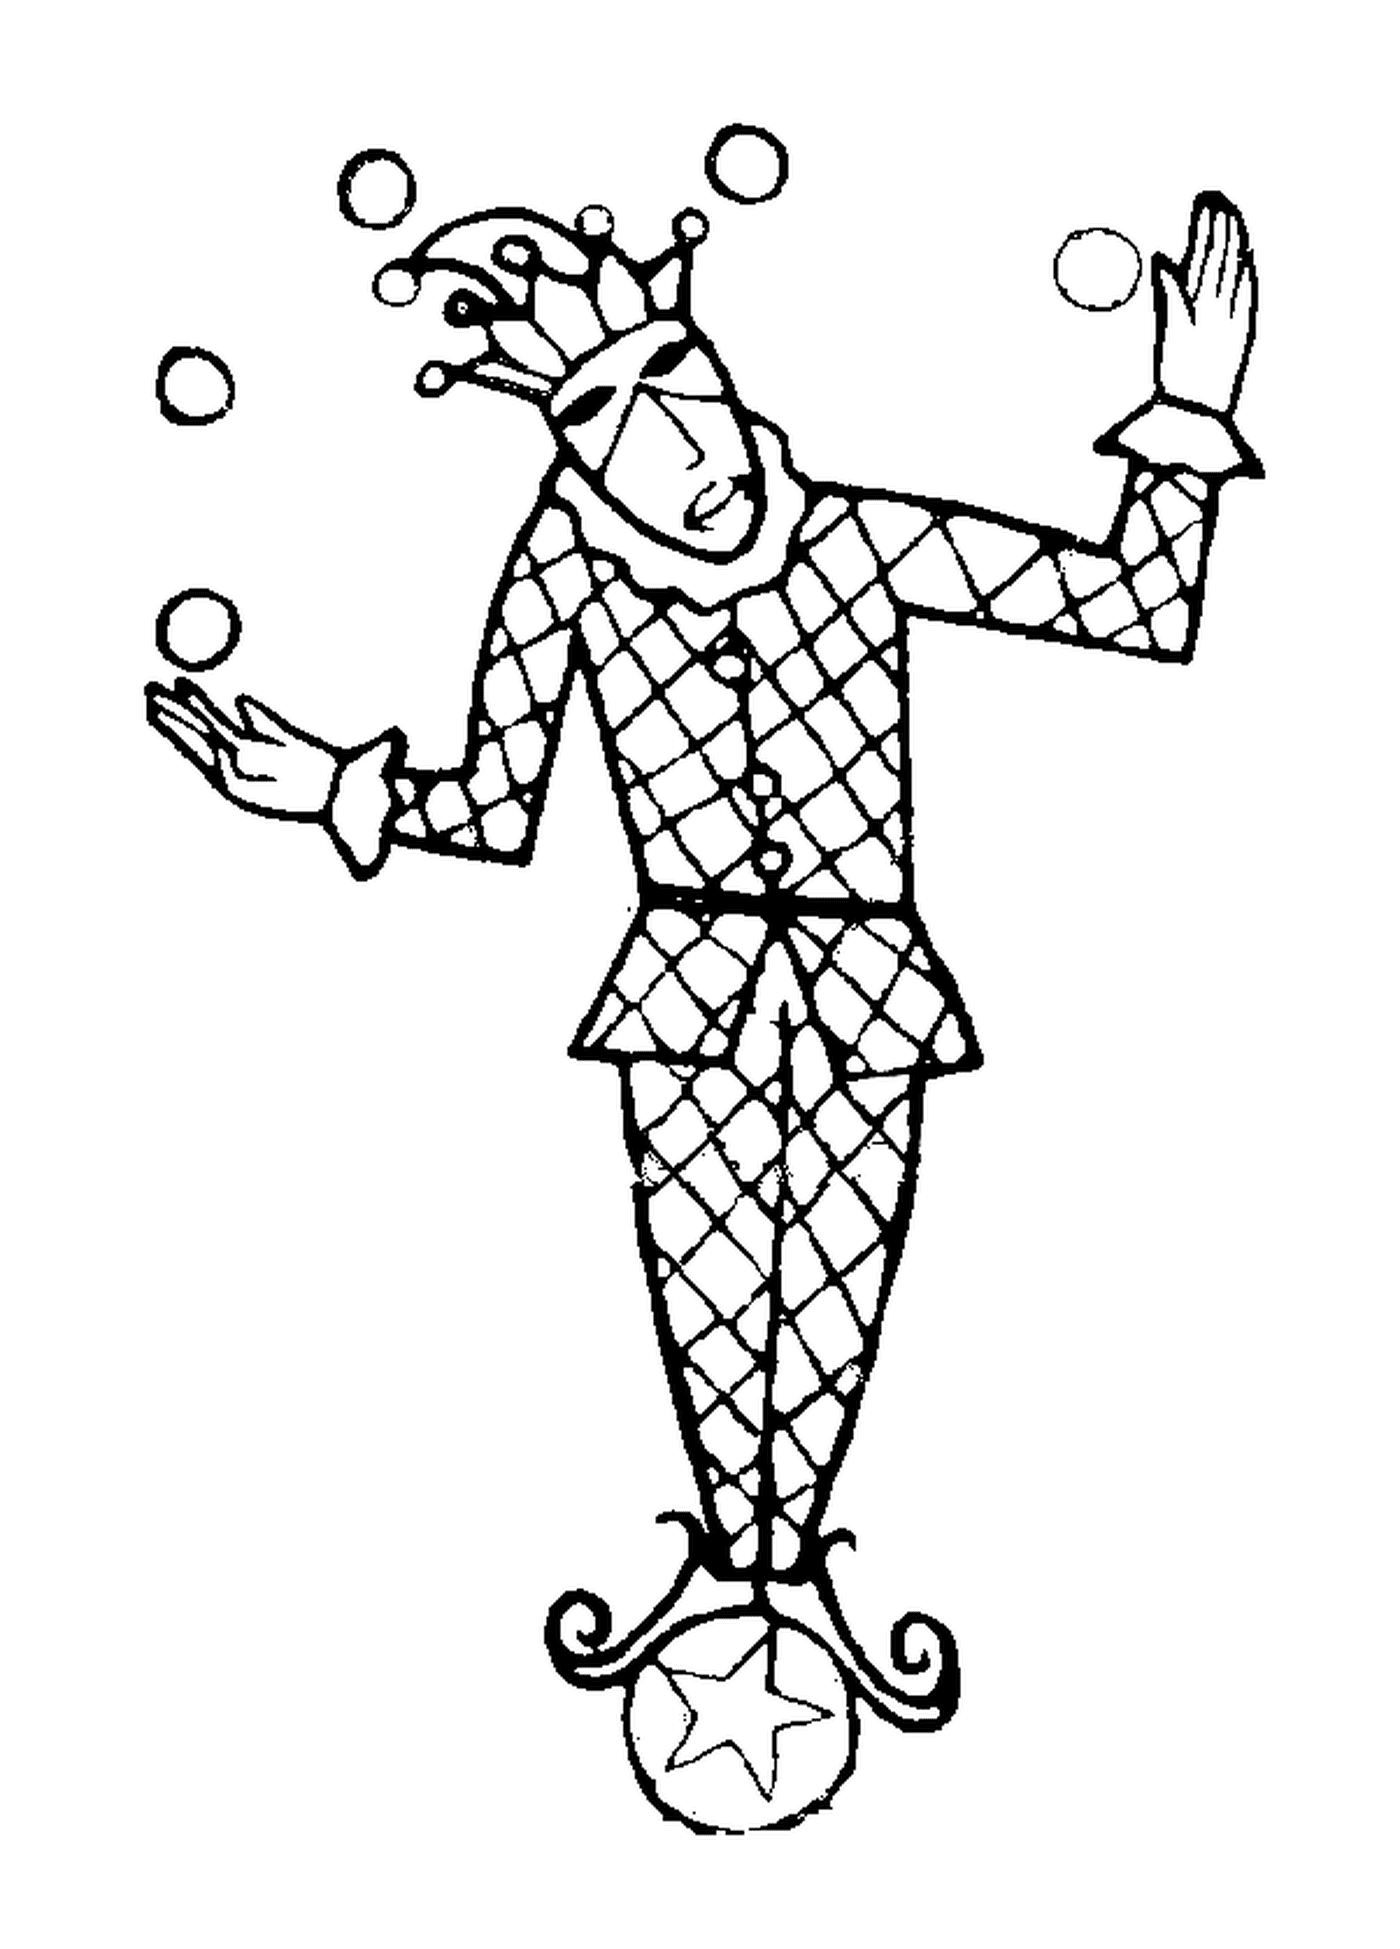  Arlequin jonglieren mit Karnevalskugeln 